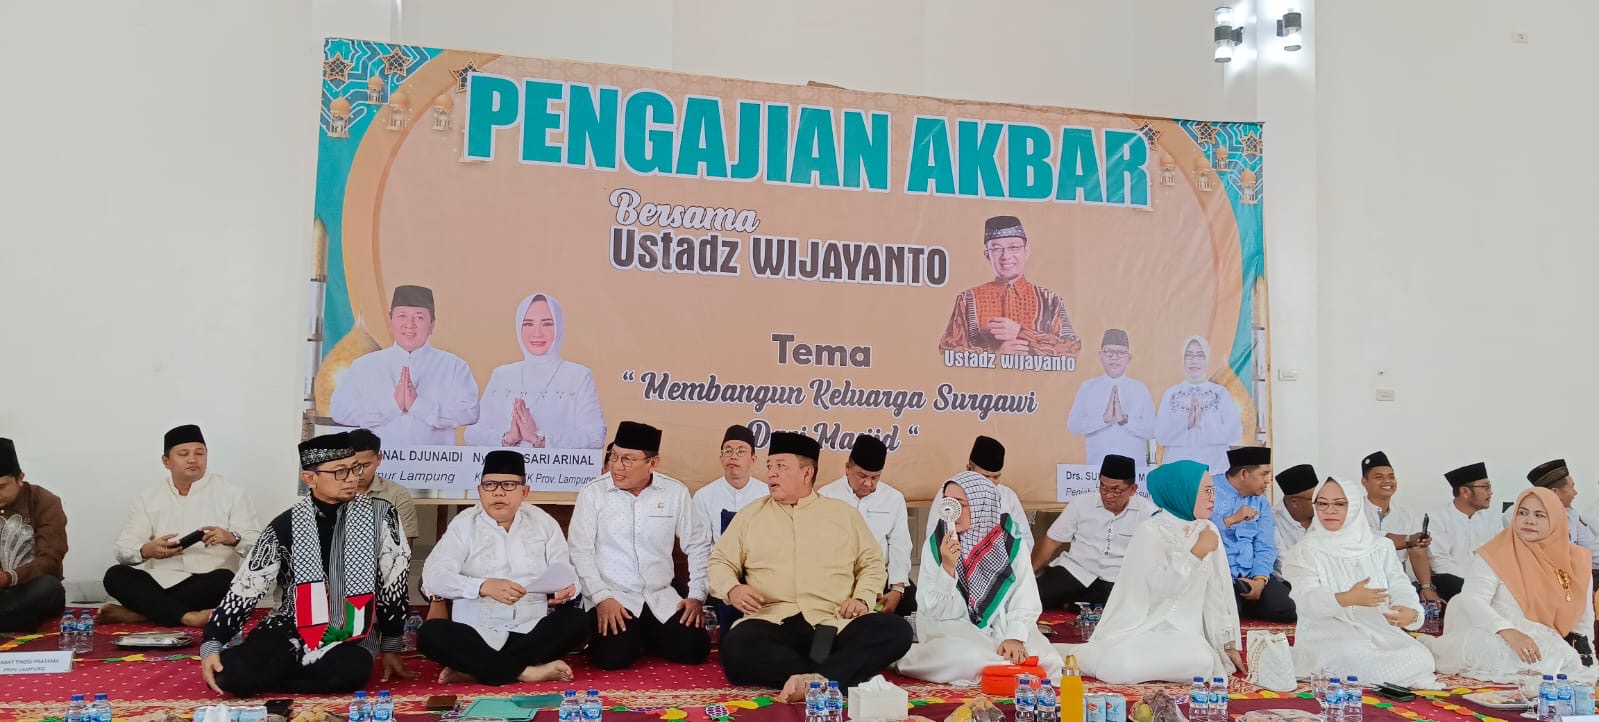 Pemkab Mesuji Gelar Pengajian Akbar dan Gubernur Lampung Resmikan Masjid Al Karim Milik Pemkab Mesuji